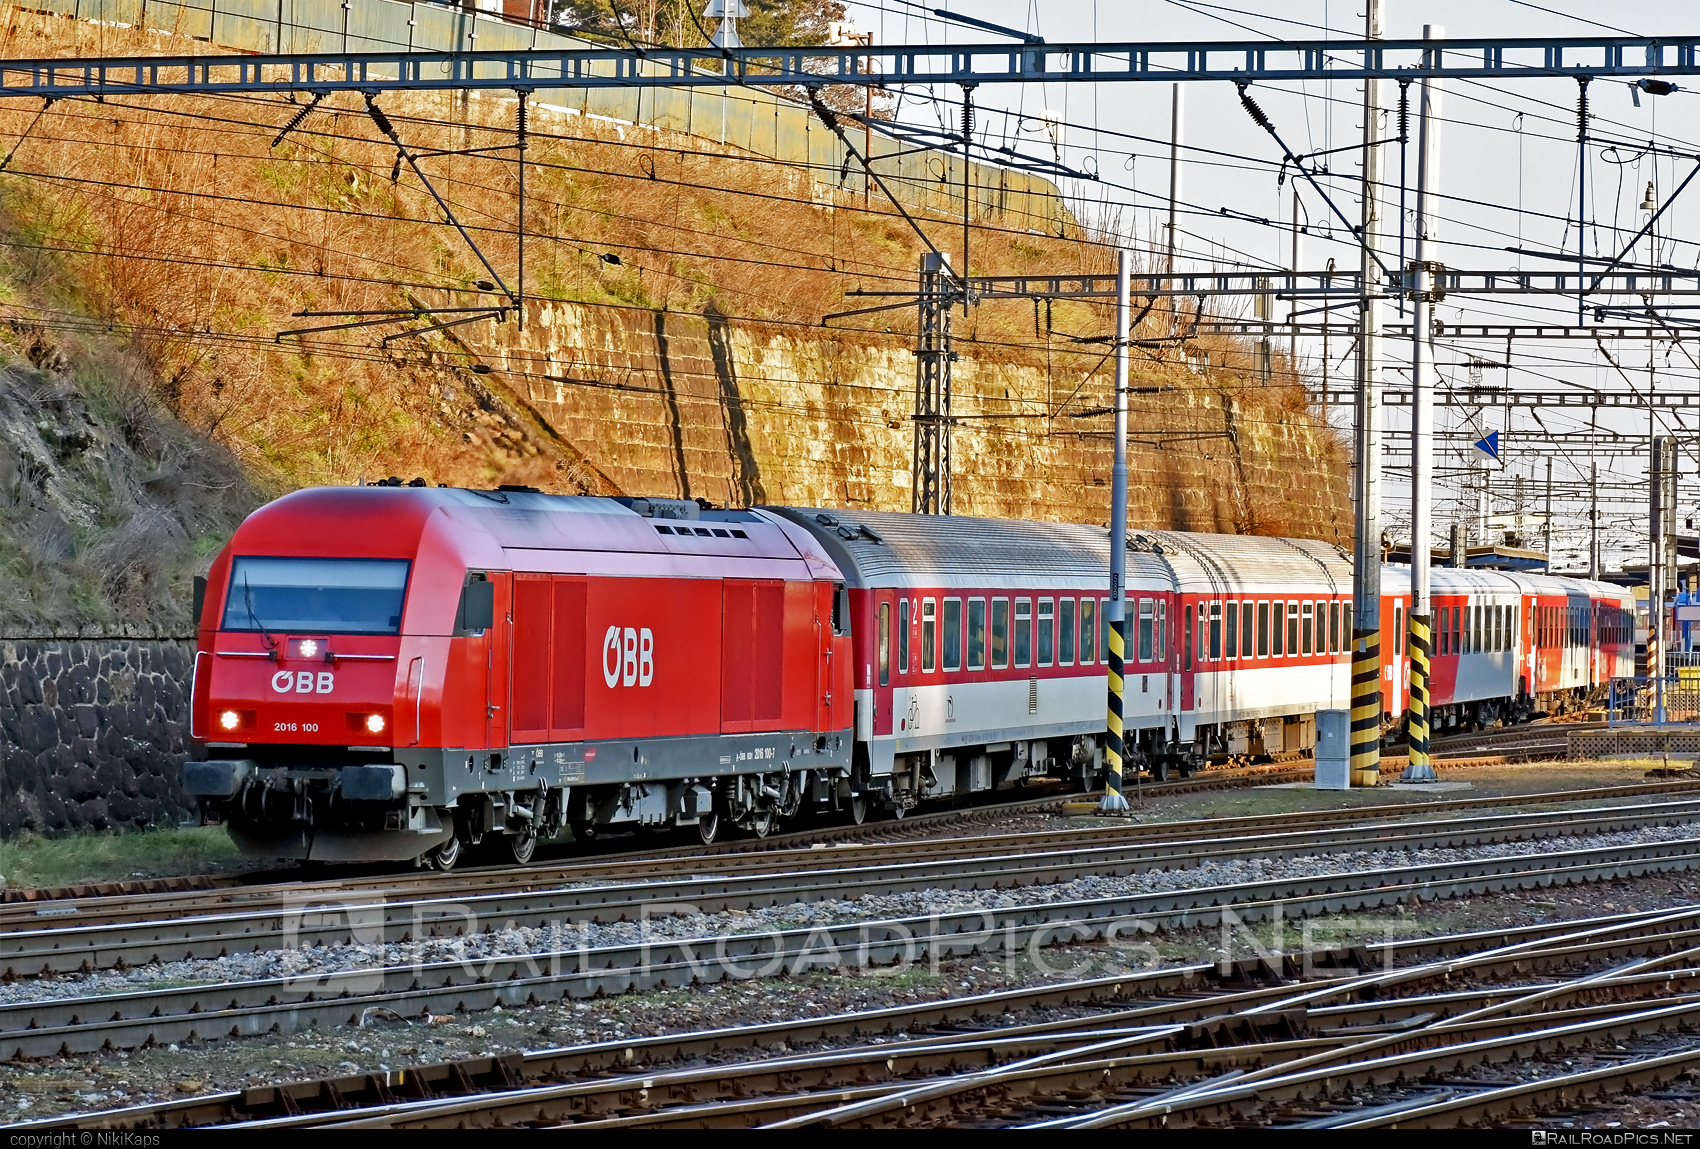 Siemens ER20 - 2016 100 operated by Österreichische Bundesbahnen #er20 #er20hercules #eurorunner #hercules #obb #osterreichischebundesbahnen #siemens #siemenser20 #siemenser20hercules #siemenseurorunner #siemenshercules